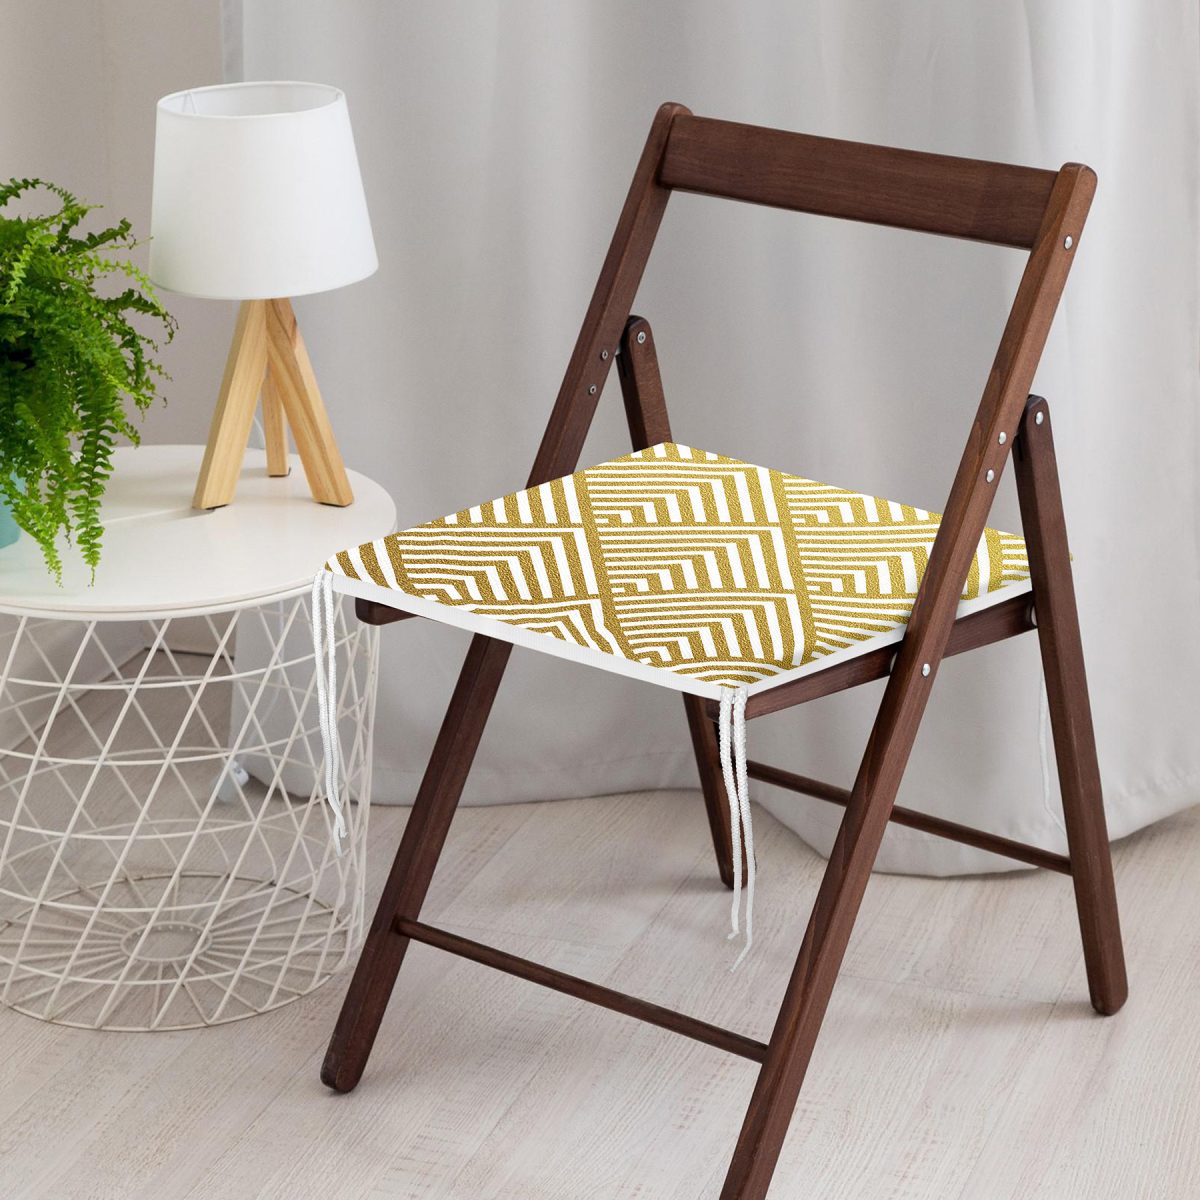 Geometrik Altın Kabartma Desenli Özel Tasarım Fermuarlı Sandalye Minderi Realhomes